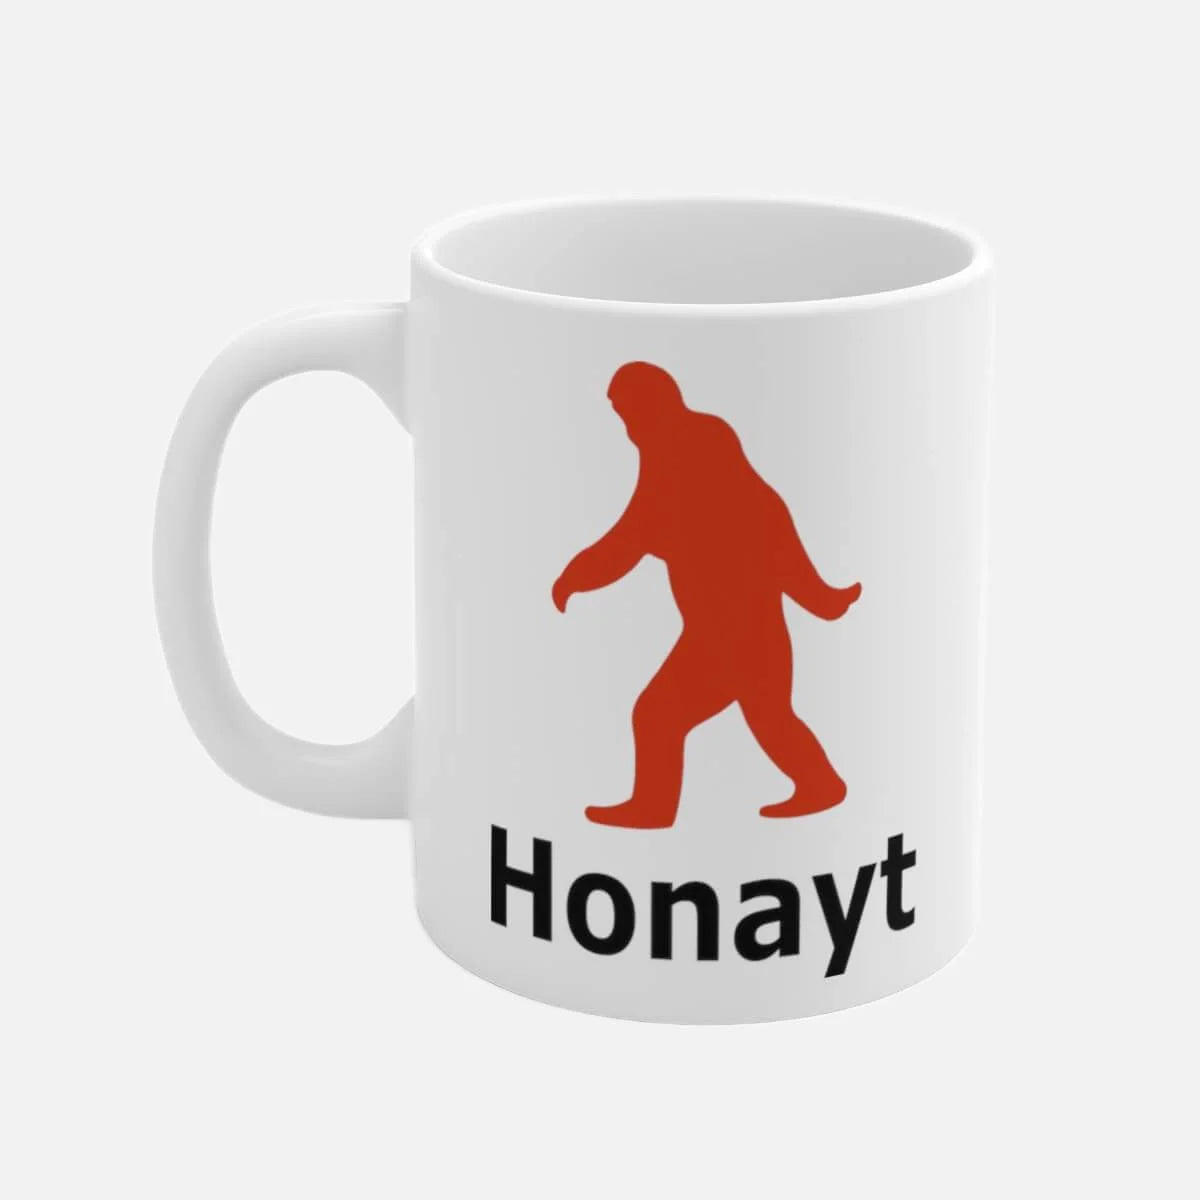 Honayt (Honesty) Sabé Mug